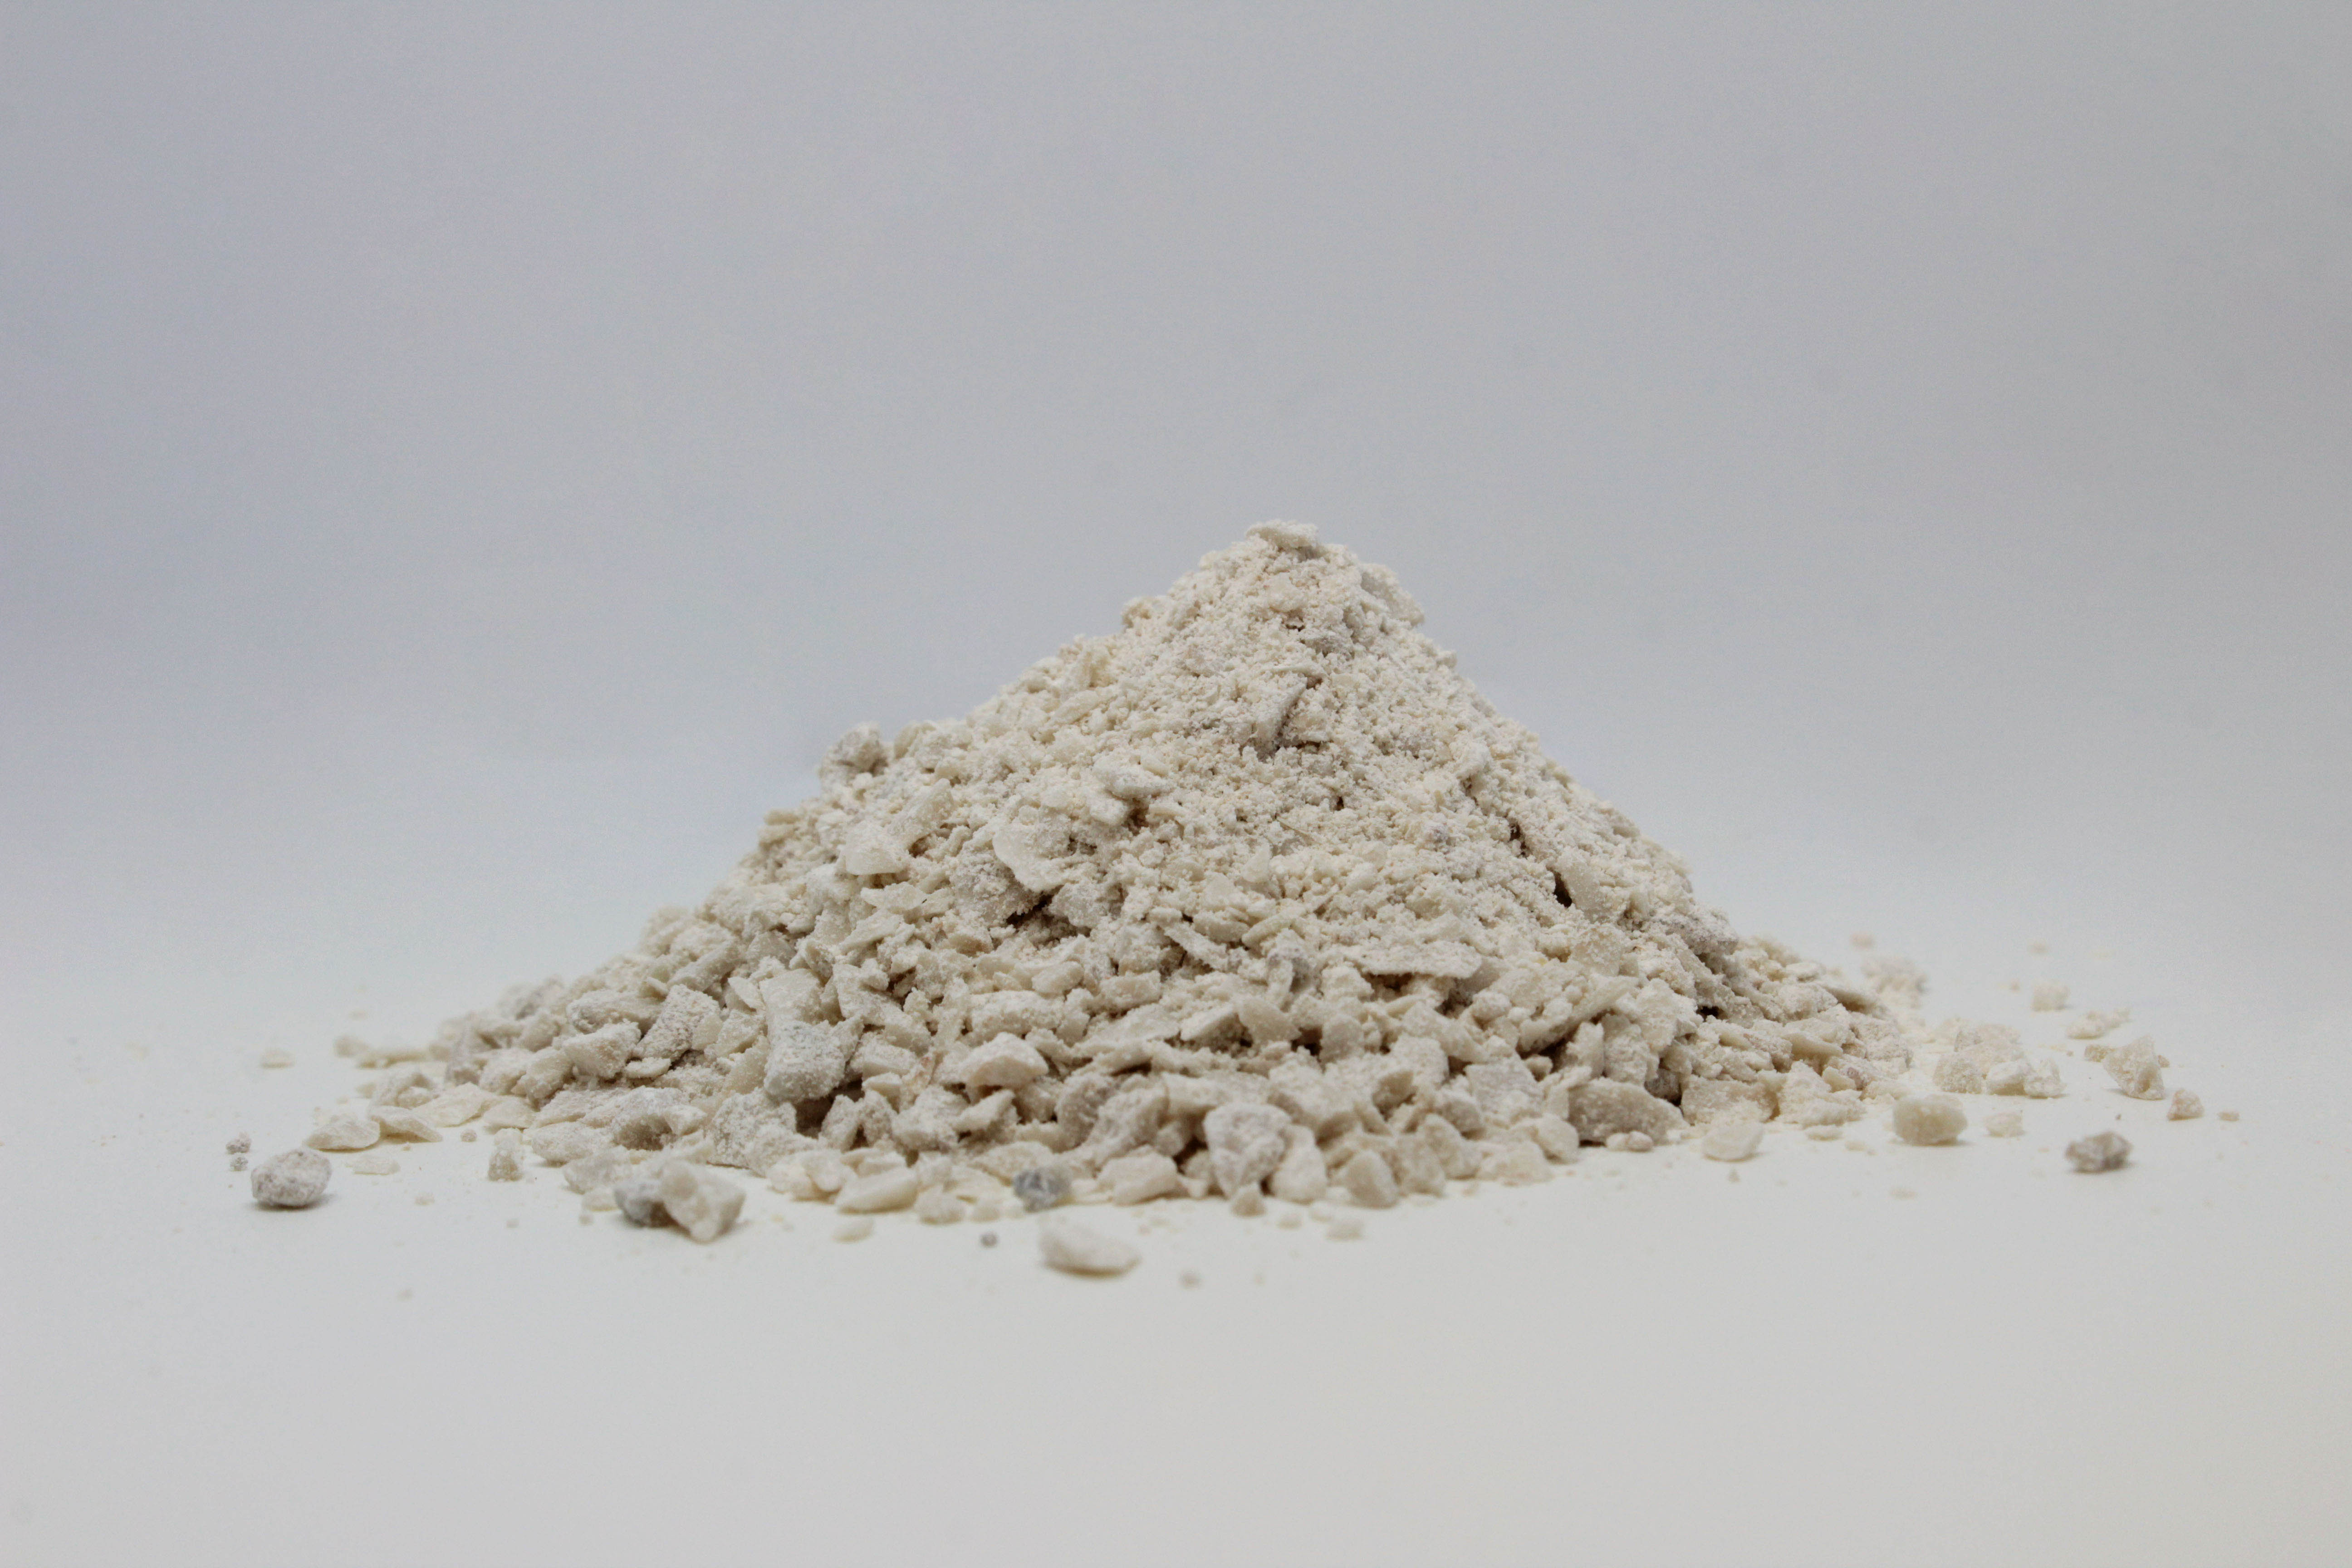 GRANIGLIE: Carbonato di calcio ottenuto dalla frantumazione di roccia calcarea prevalentemente microcristallina.